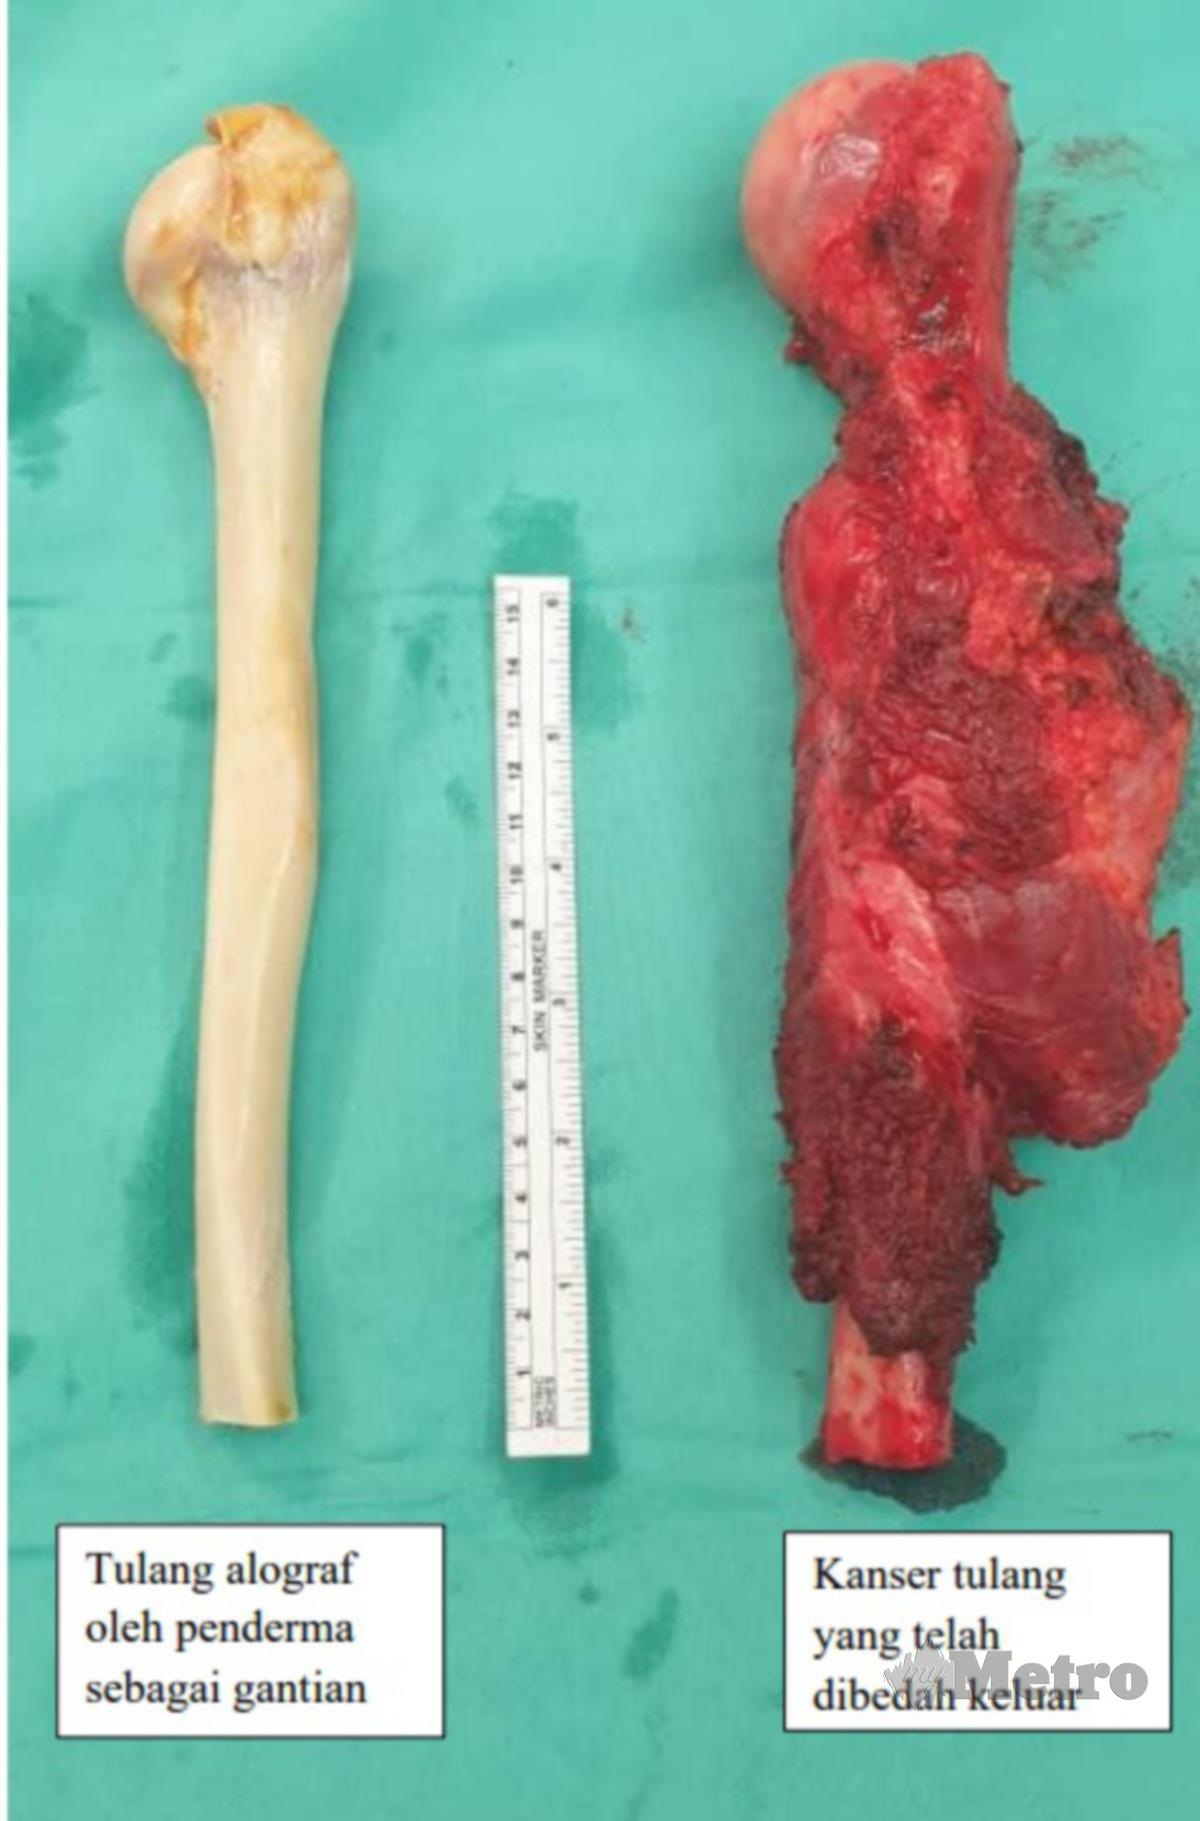 TULANG alograf oleh penderma sebagai gentian (kiri), barah tulang yang dikeluarkan daripada pembedahan (kanan).